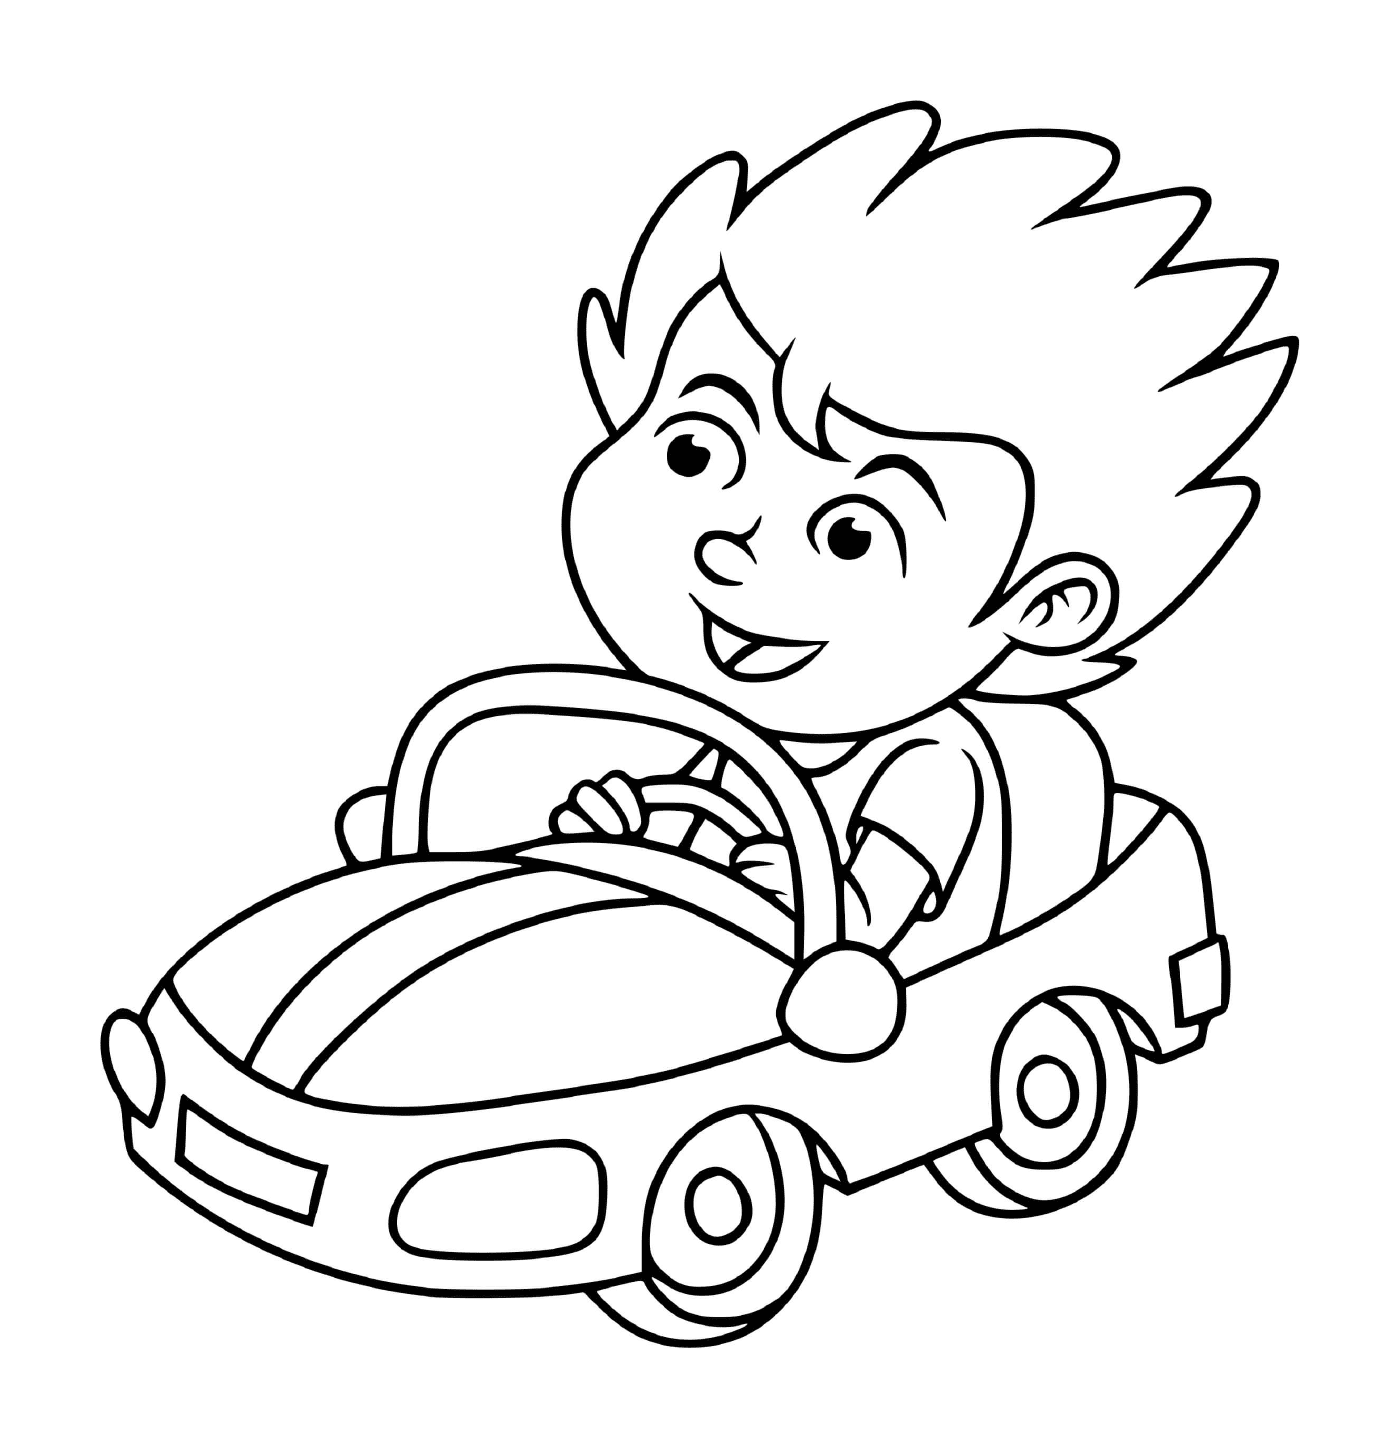  एक बच्चा बीमा के साथ कार चलाता है 